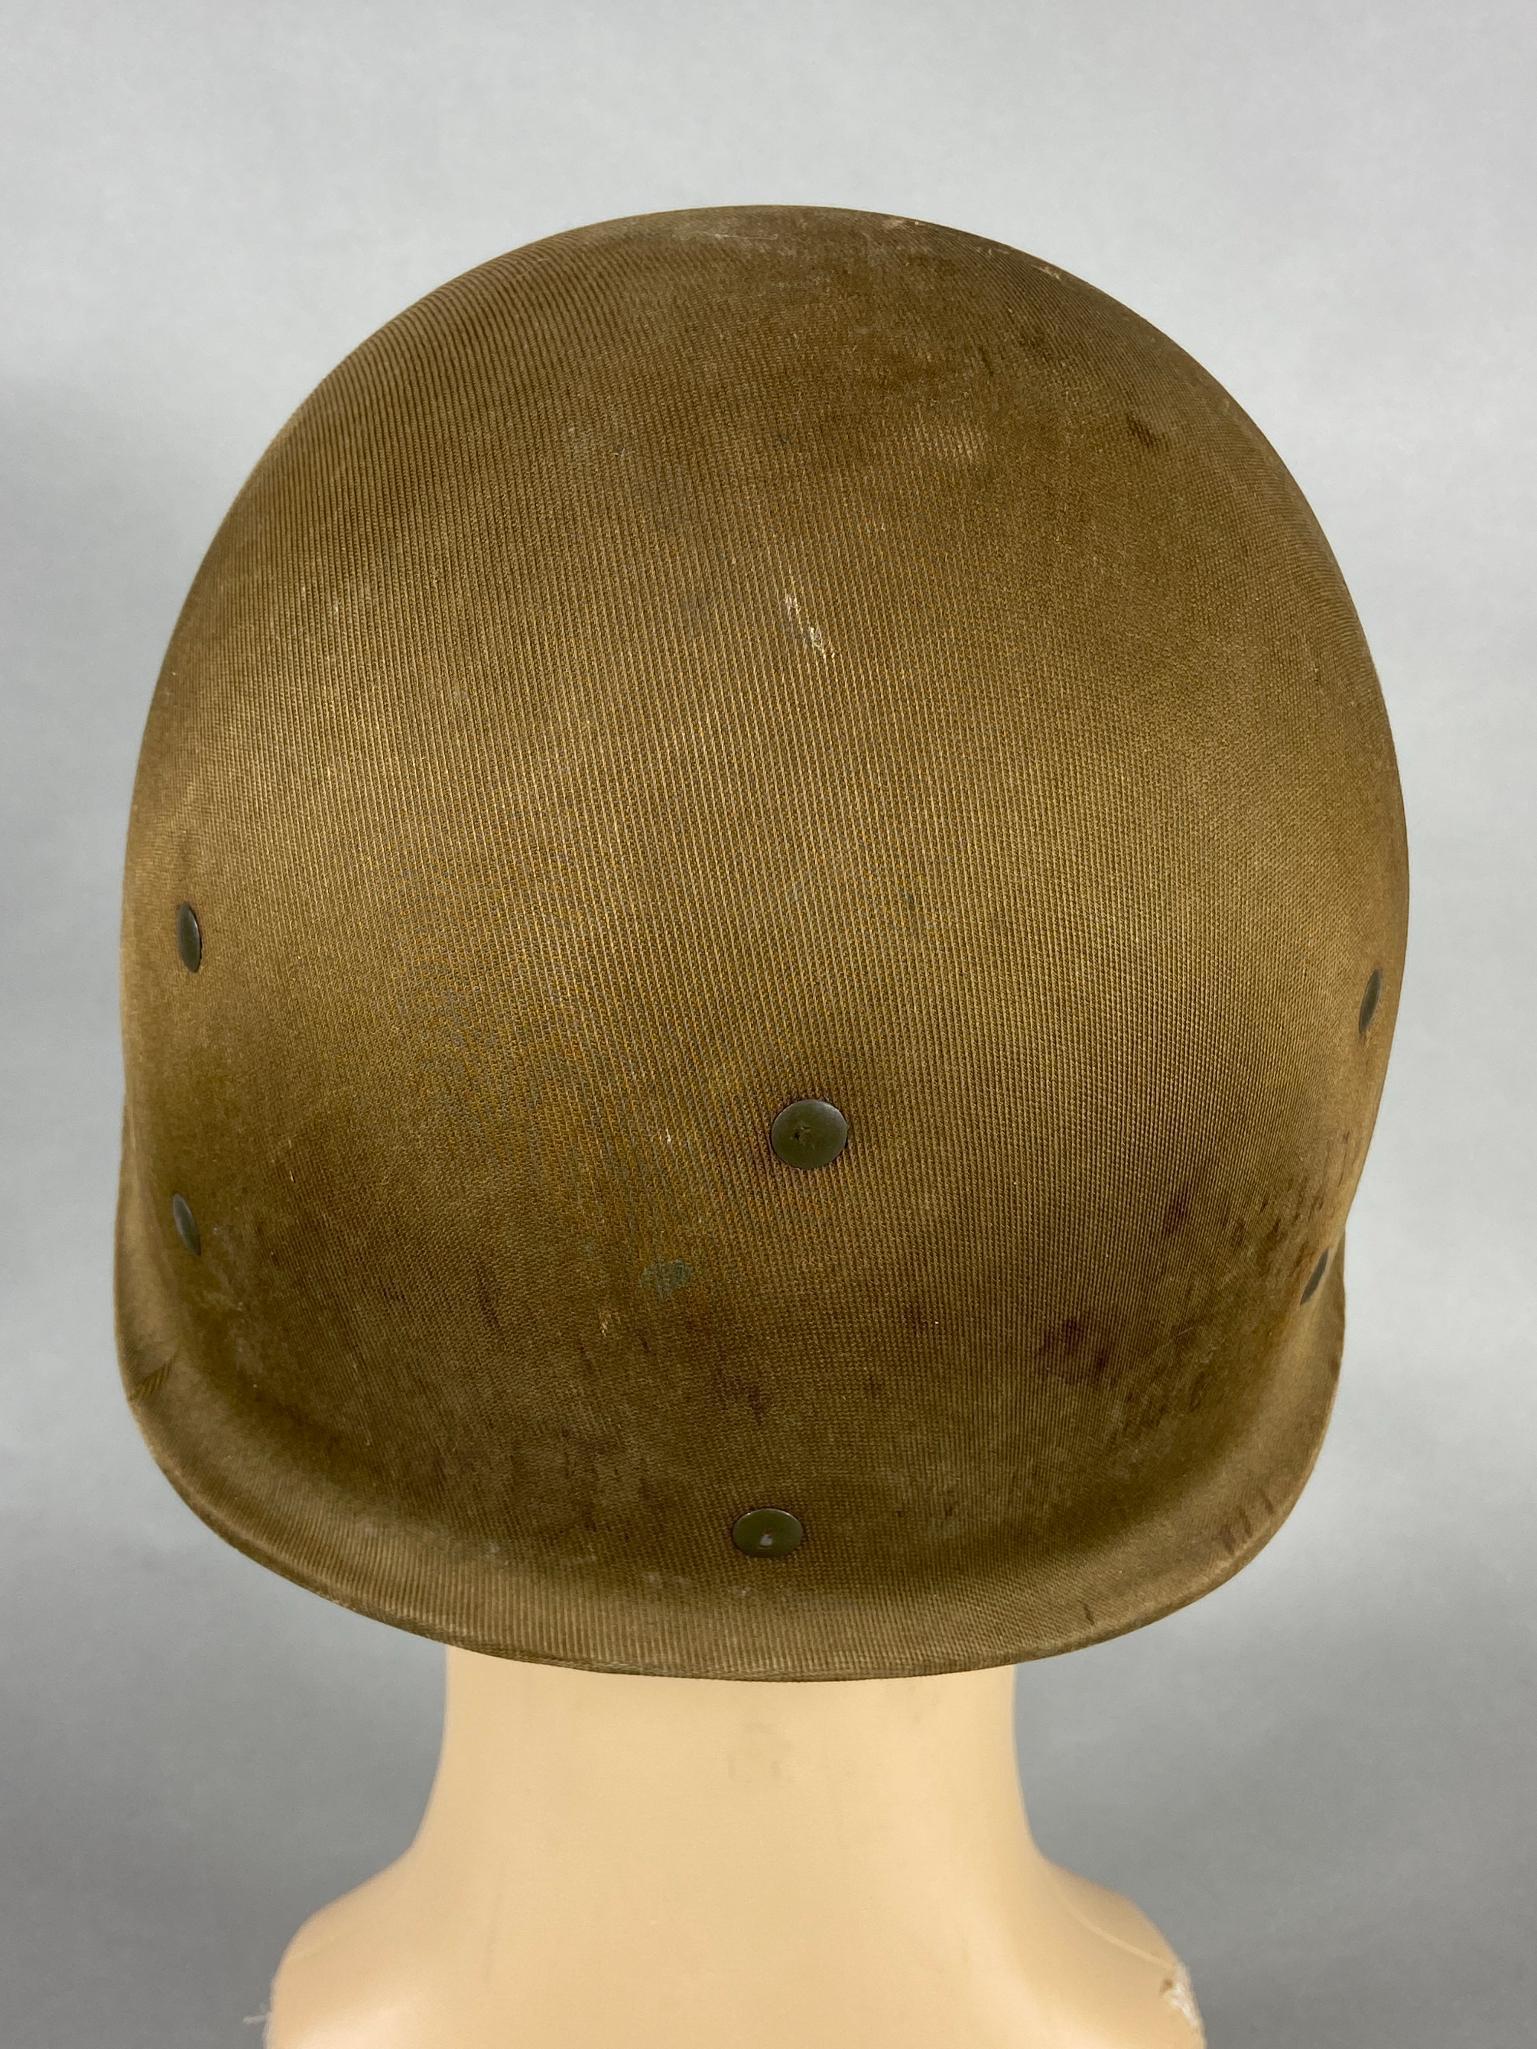 WWII US M1 HAWLEY HELMET LINER - IDED KIA 95TH ID 378TH REGIMENT